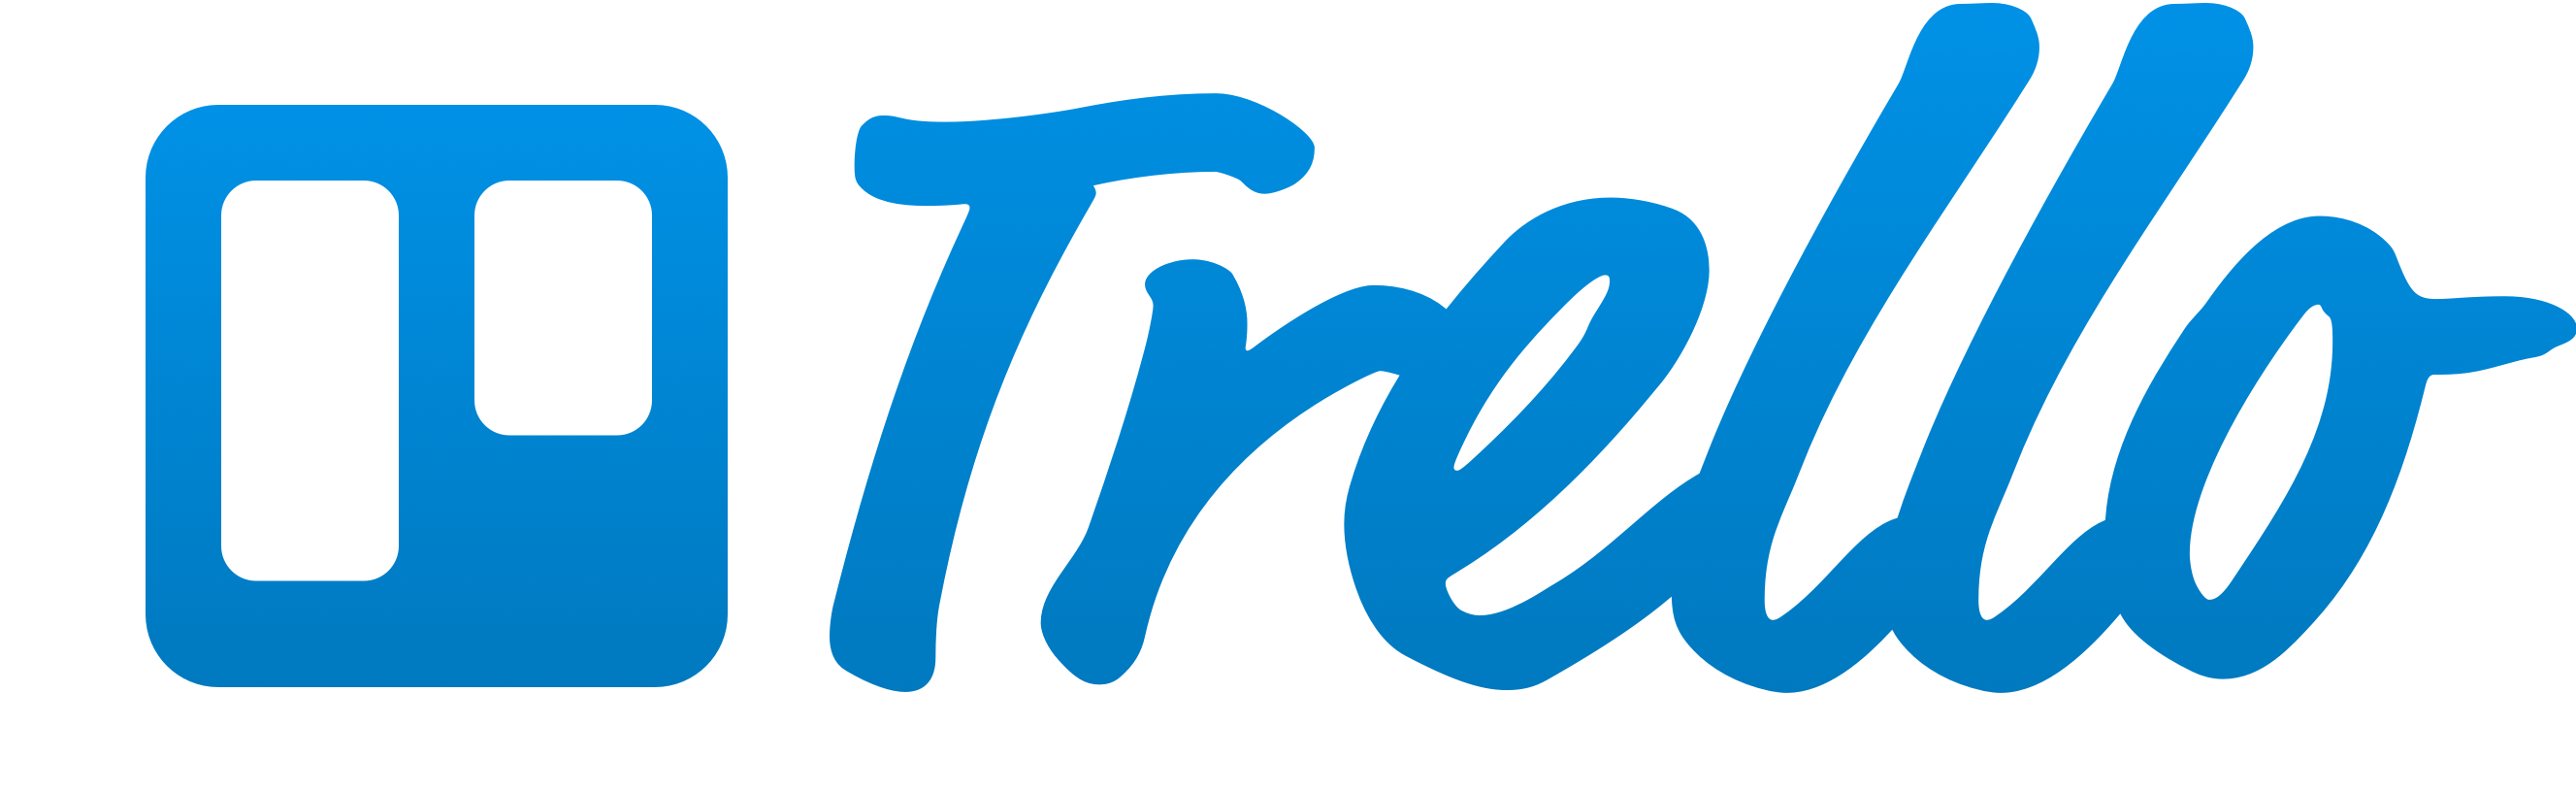 trello logo icon with background